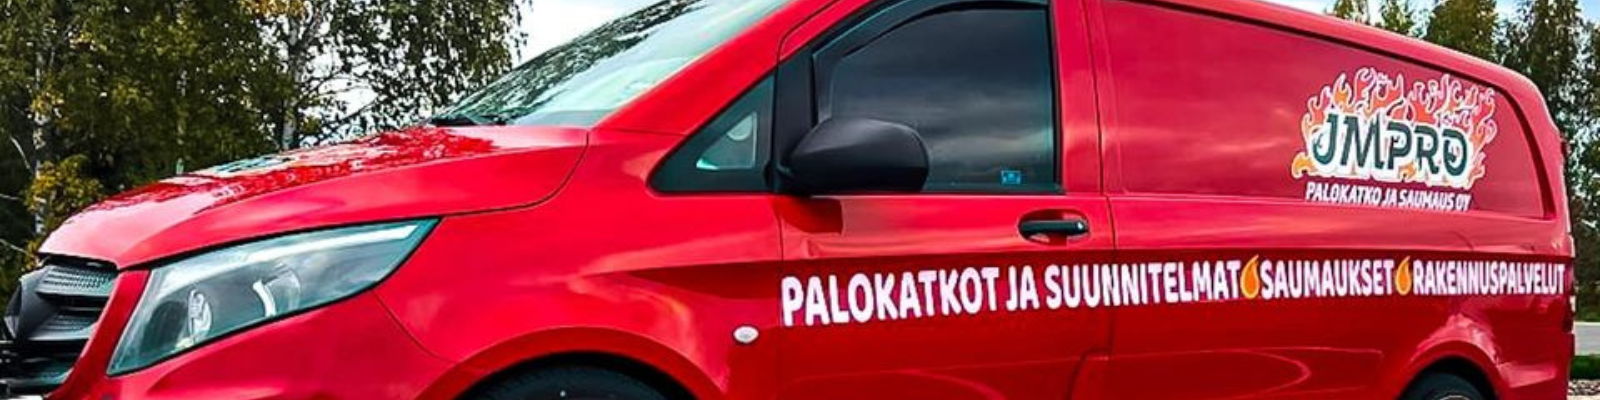 JMPRO Palokatko ja Saumaus Oy - Y-tunnus: 3182295-5 - Yritystiedot,  taloustiedot, päättäjät & hallituksen jäsenet